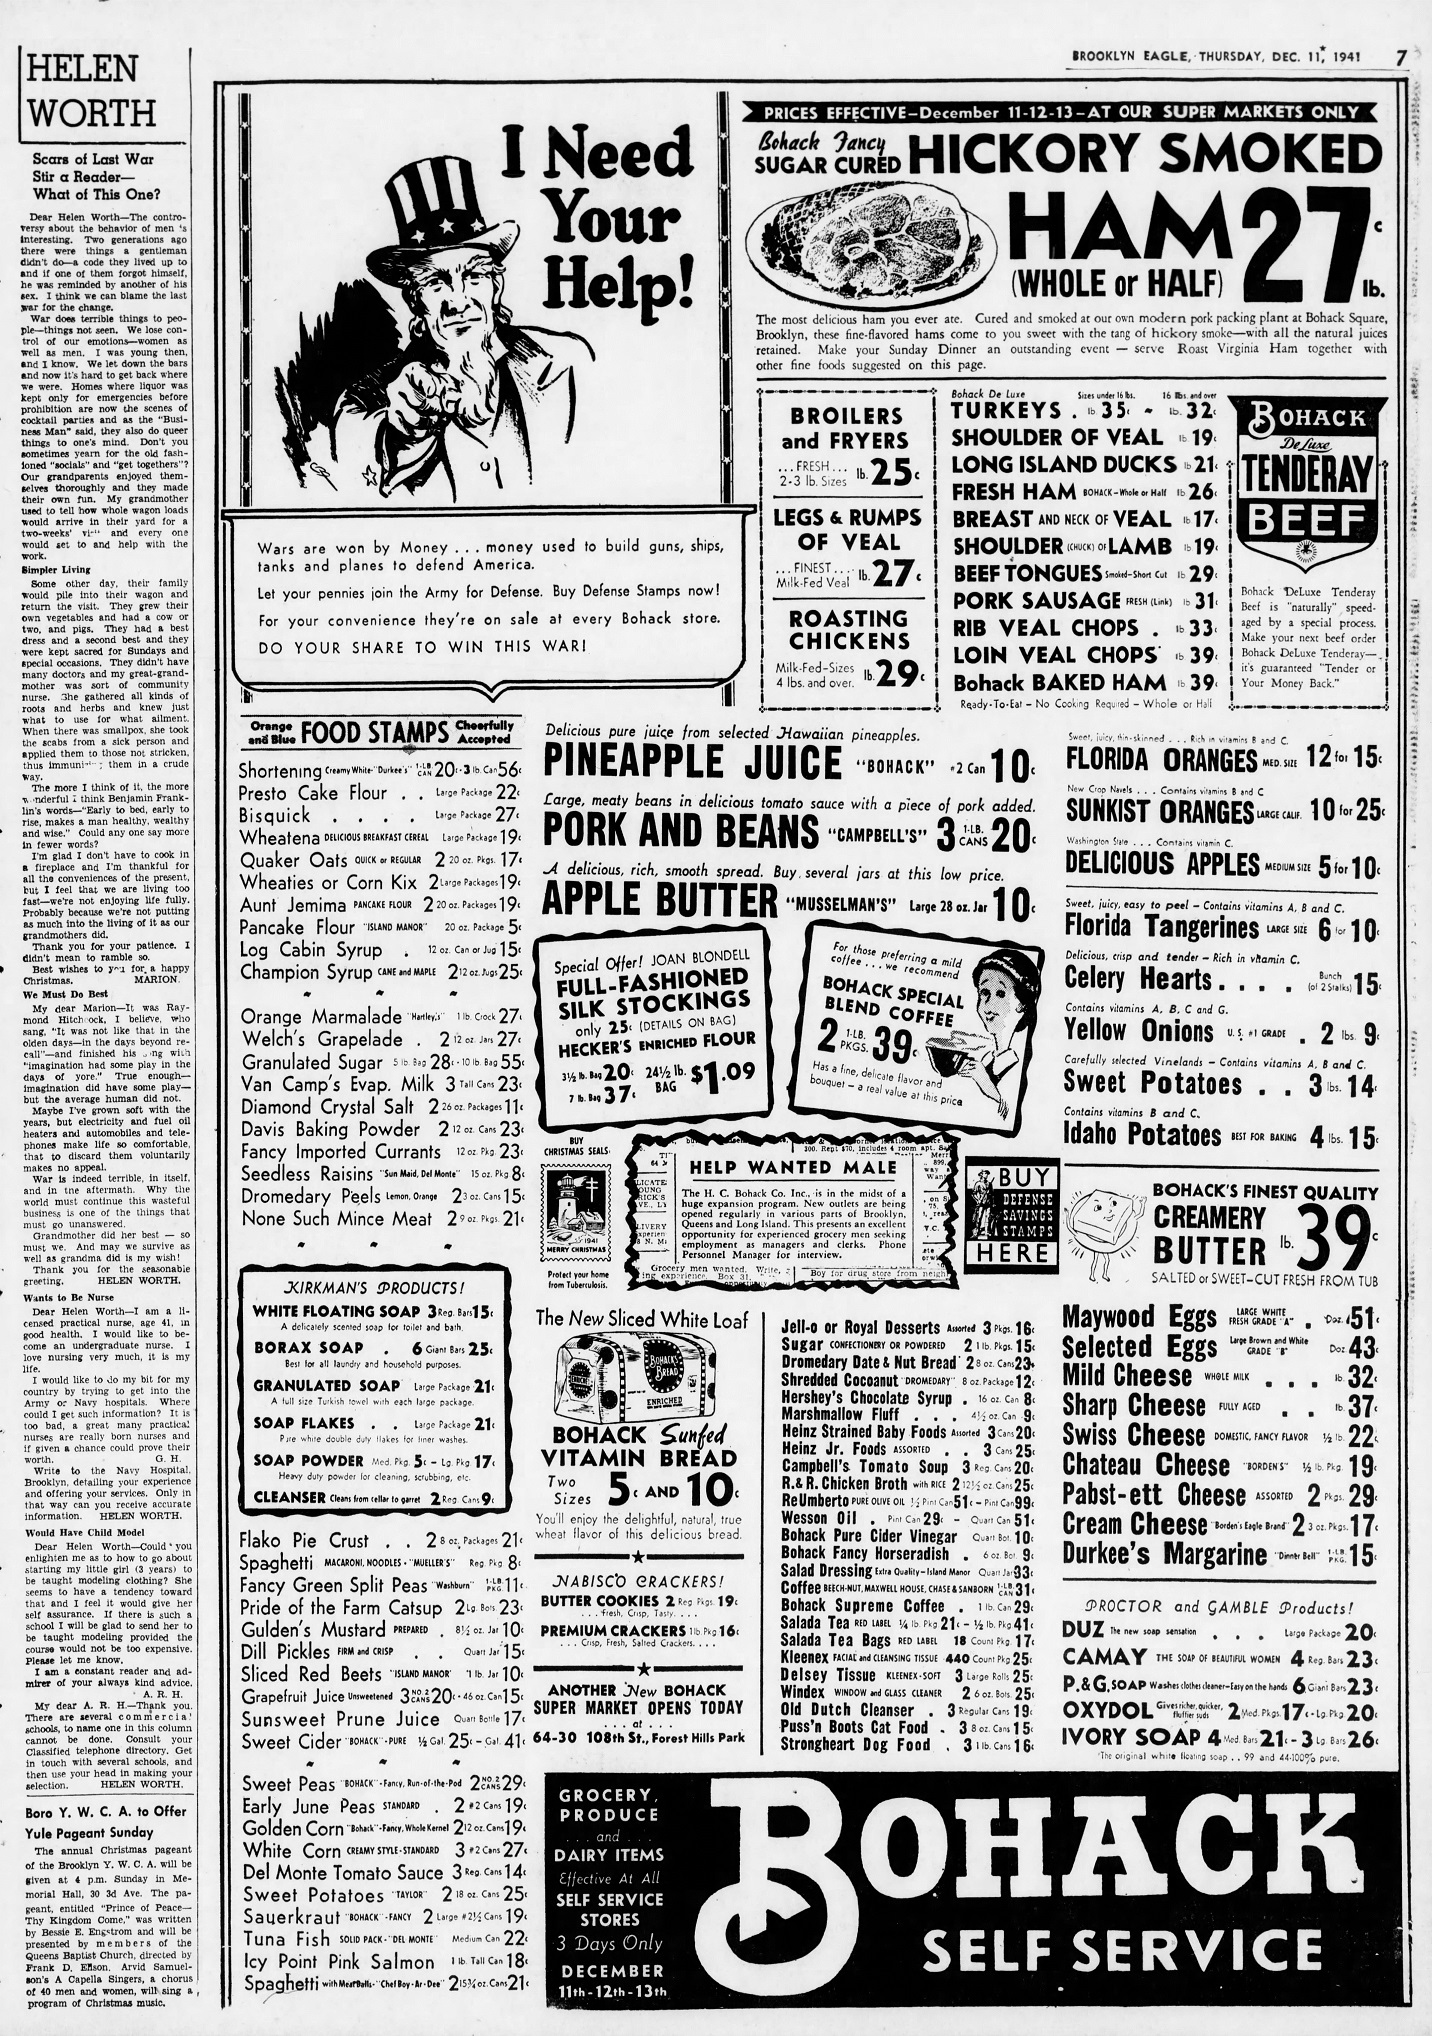 The_Brooklyn_Daily_Eagle_Thu__Dec_11__1941_(2).jpg